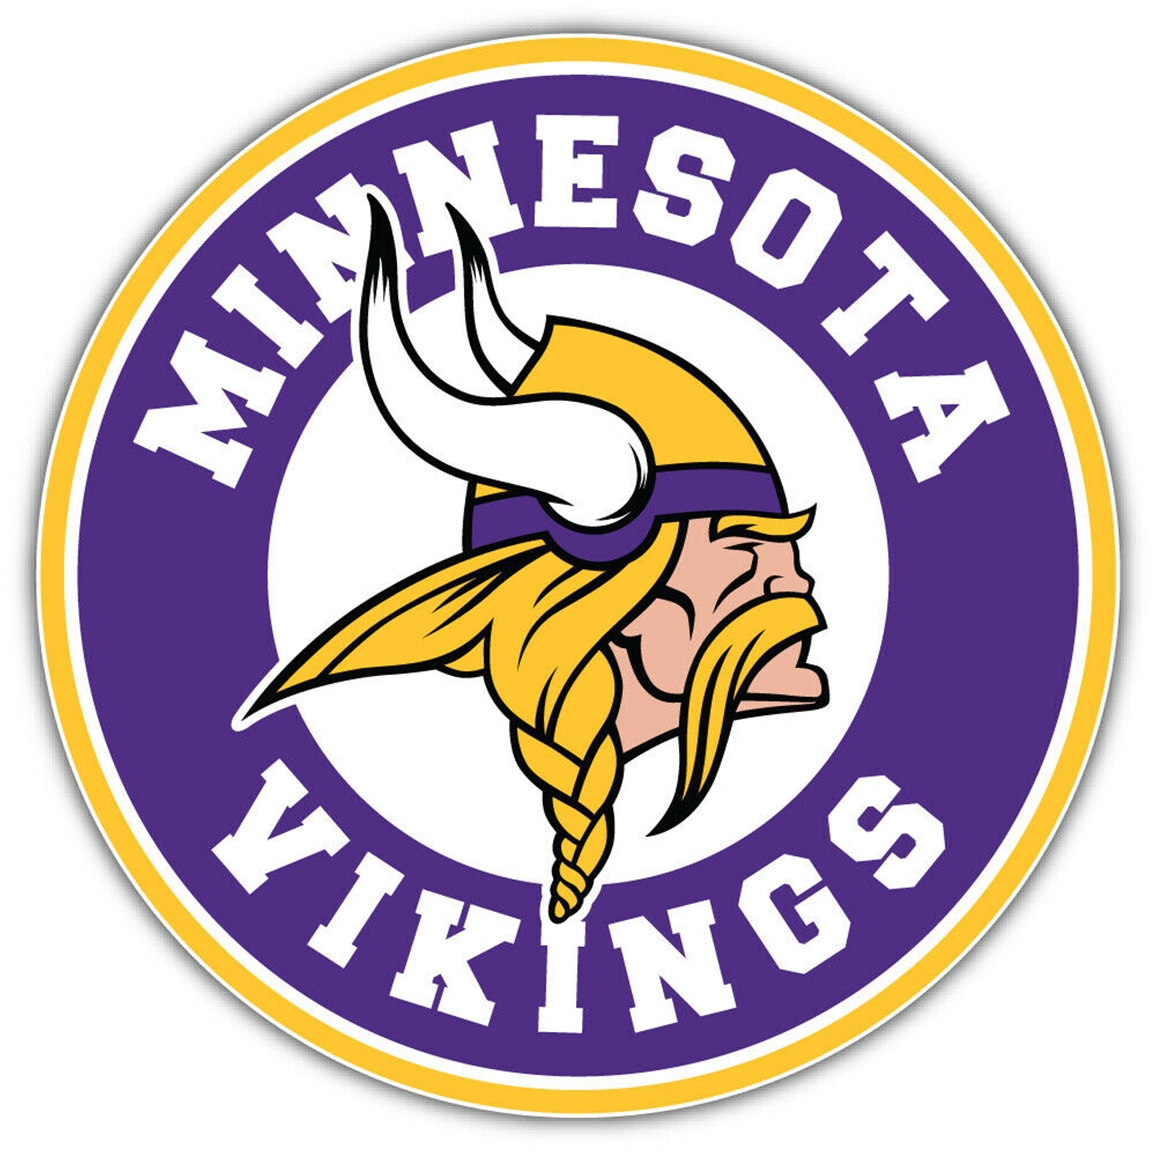 Minnesota Vikings Pub Tap Handle